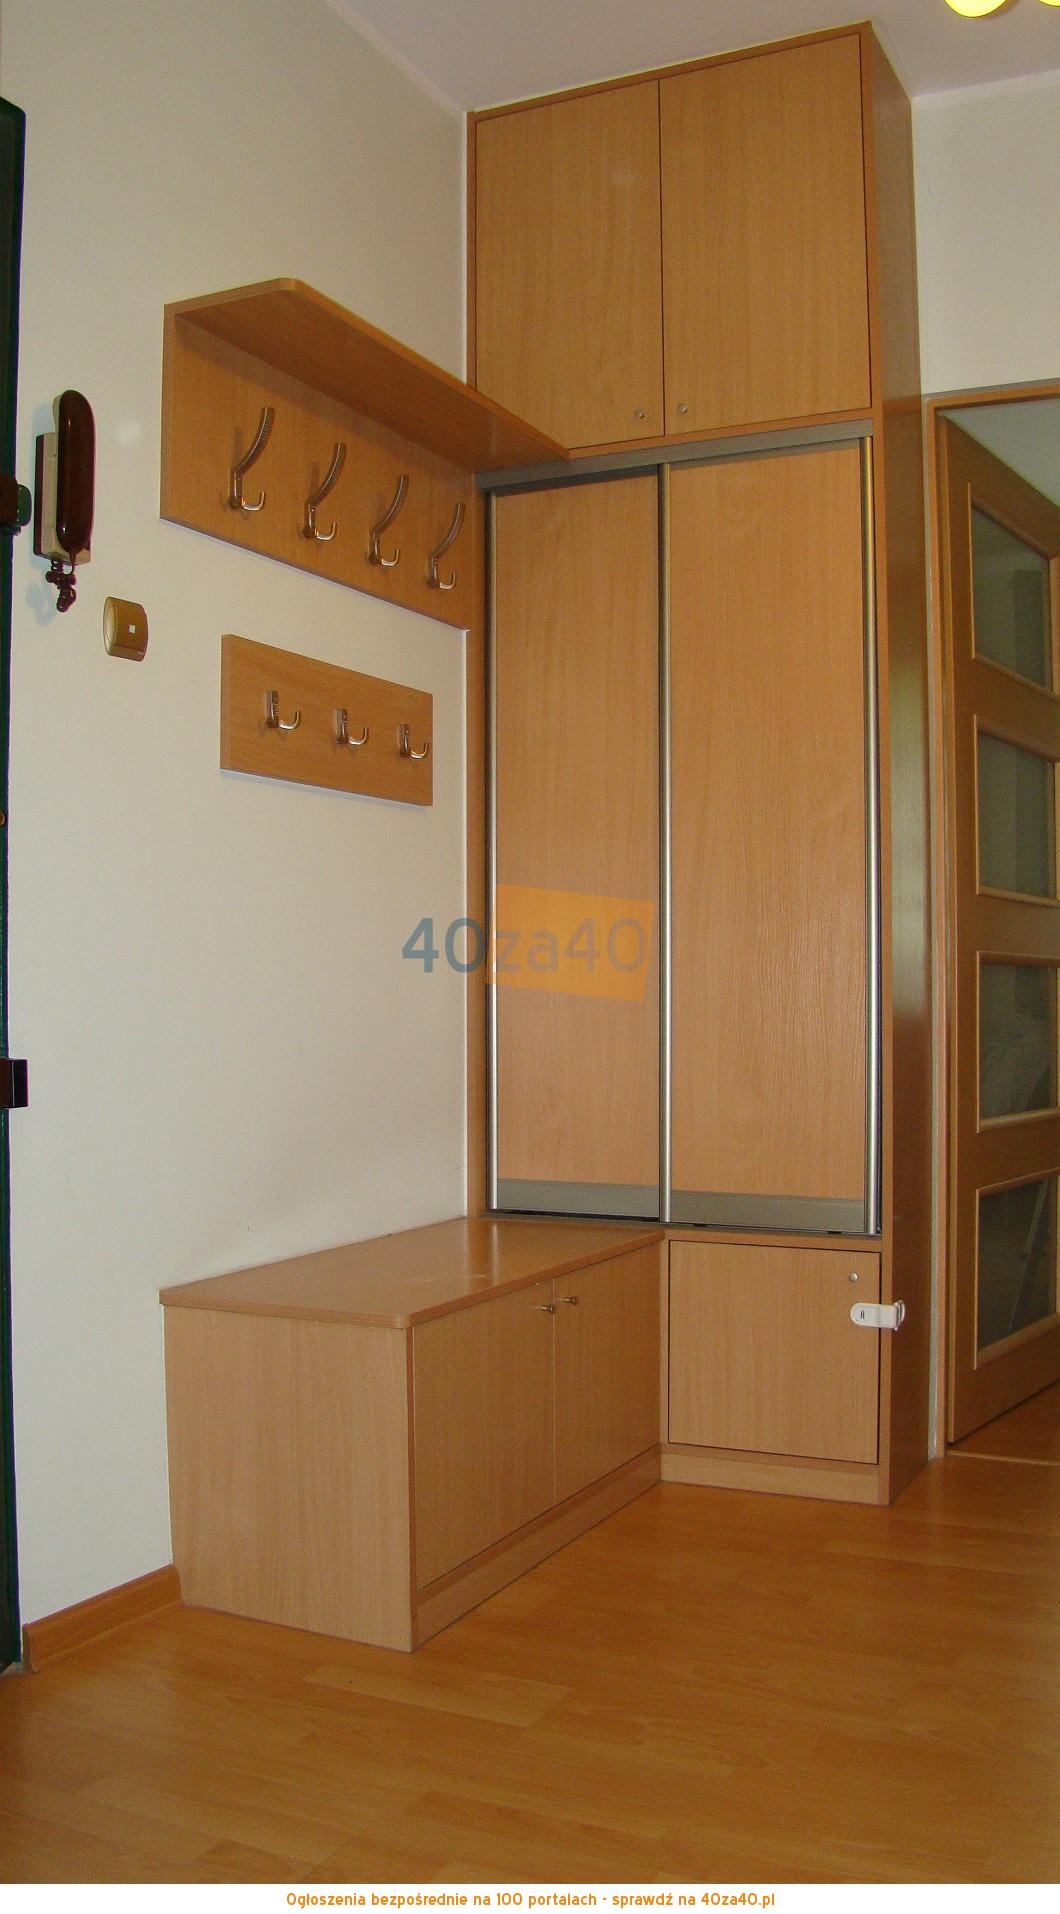 Mieszkanie do wynajęcia, pokoje: 2, cena: 1 050,00 PLN, Szczecin, kontakt: 602 159 350